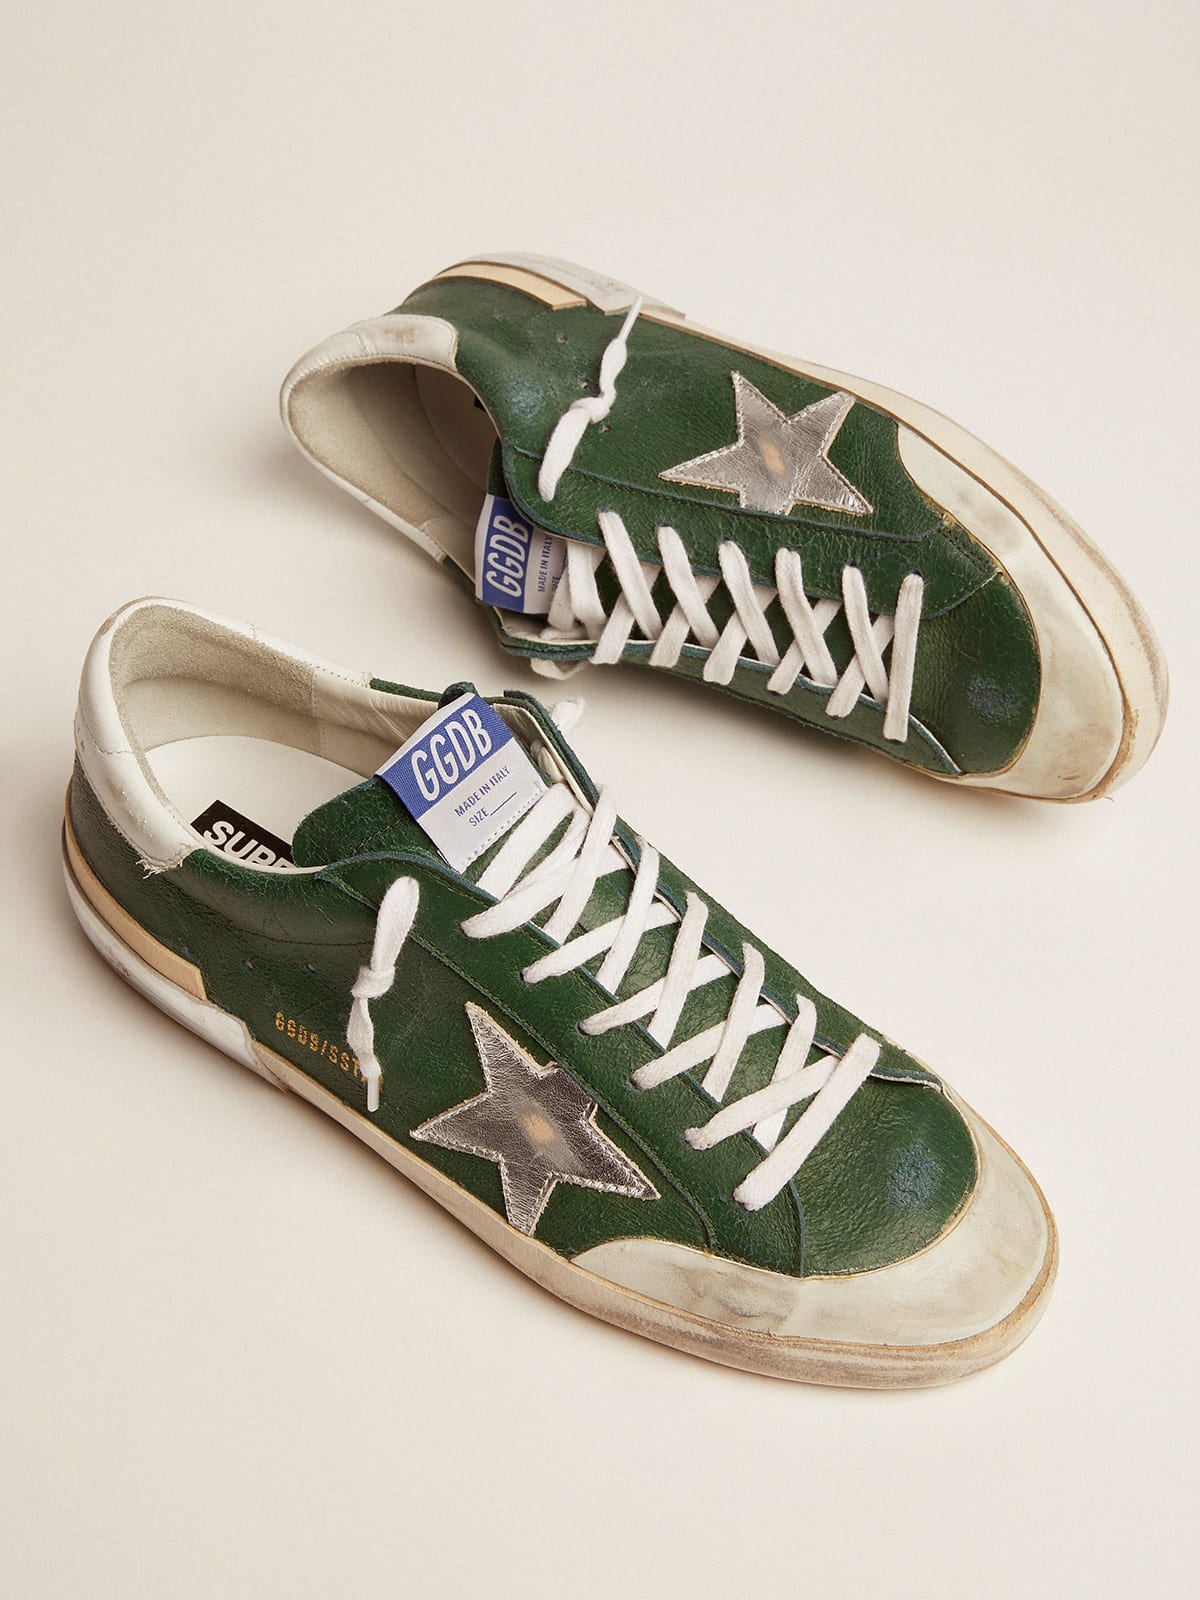 Golden Goose - Sneakers Super-Star en cuir vert avec multibande de renfort in 